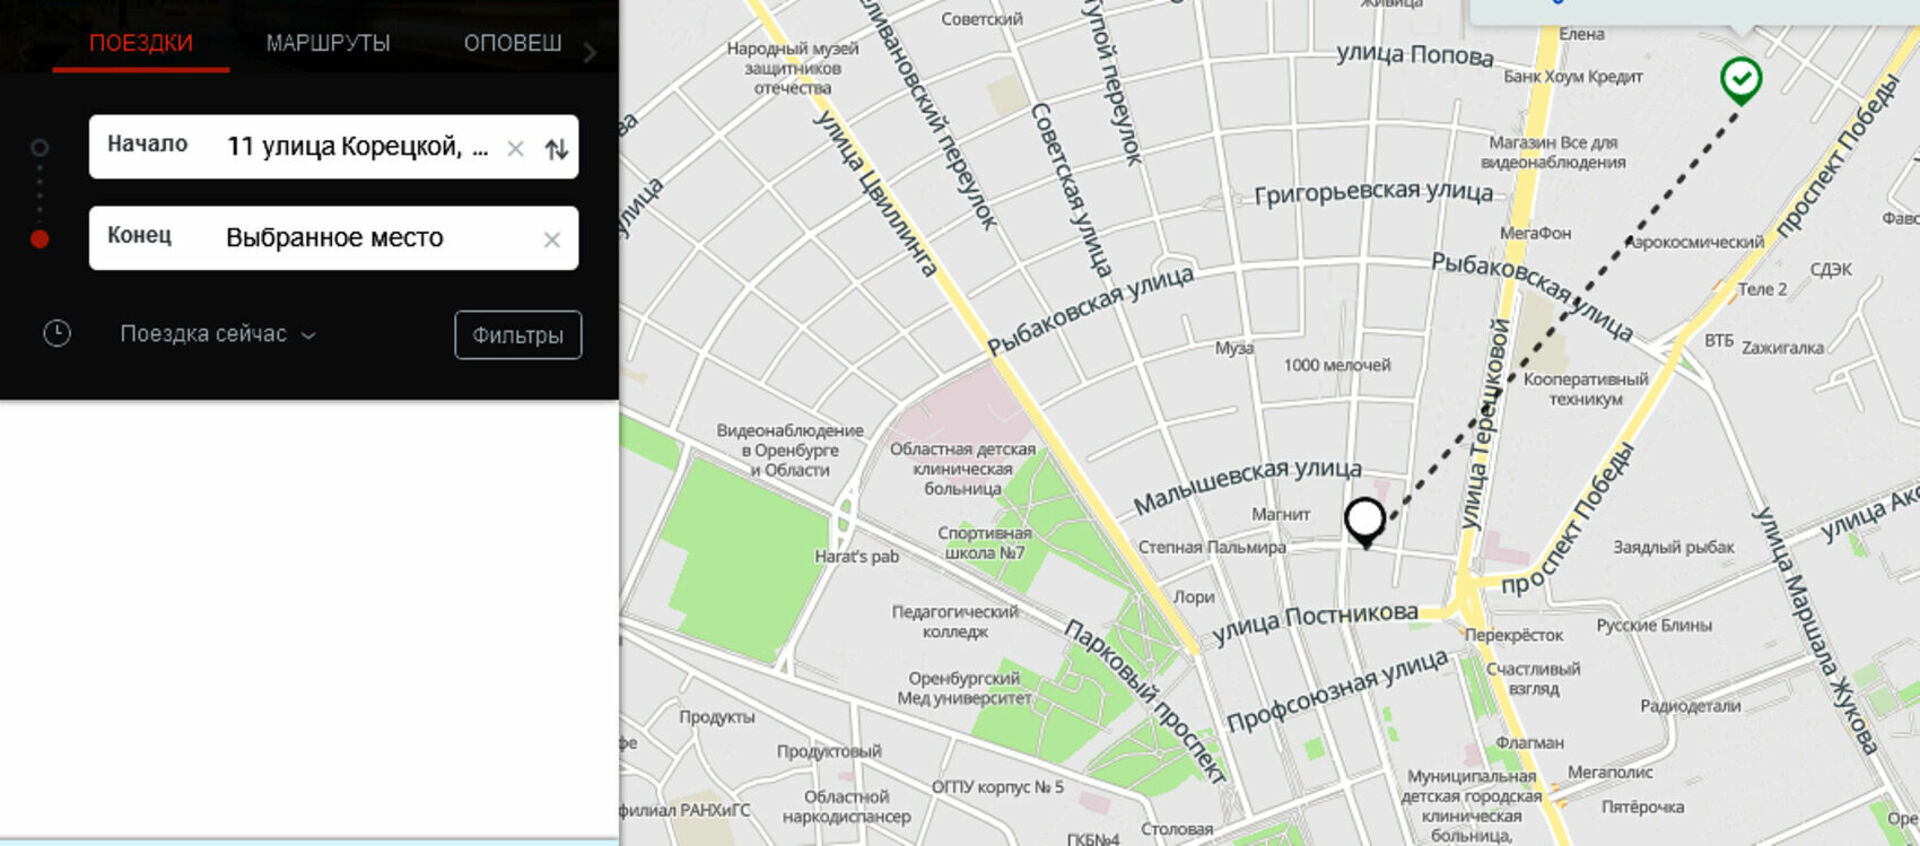 Отслеживать автобус 23. Приложение для отслеживания автобусов. Карта отслеживания автобусов. Мониторинг общественного транспорта в Москве. Moovit транспортное приложение.